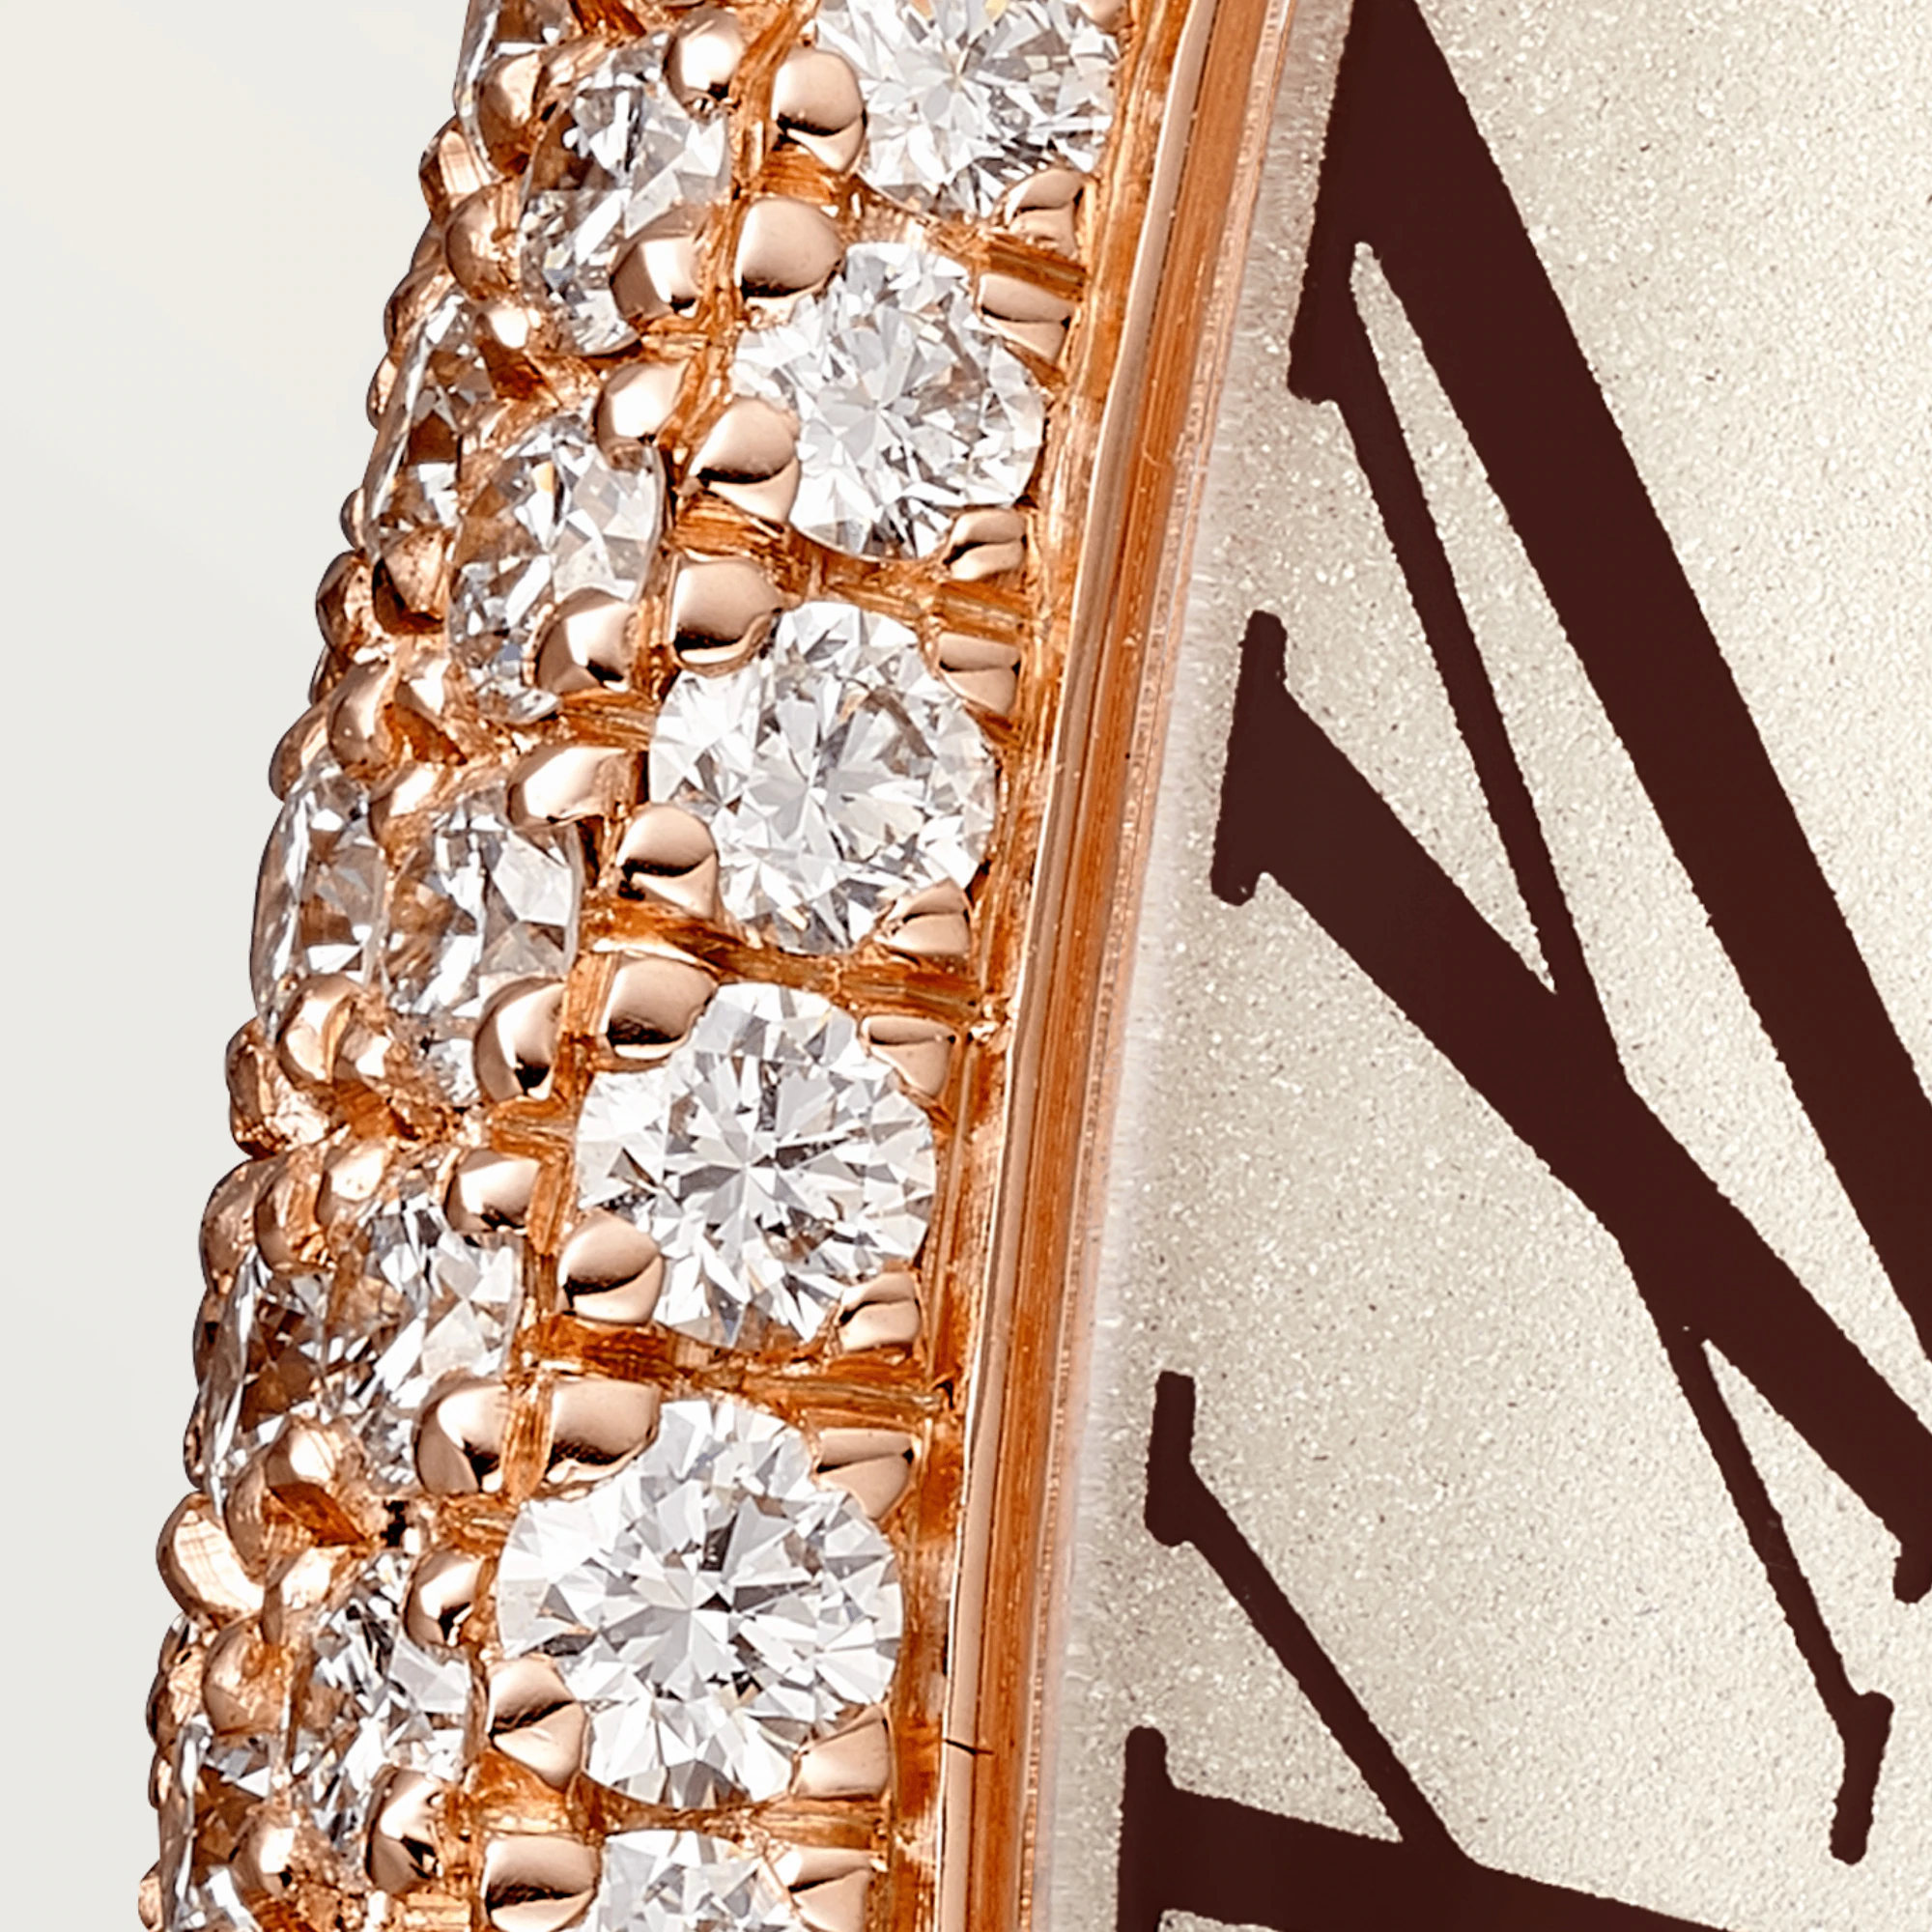 Cartier Baignoire 18K Rose Gold & Diamonds Ladies Watch